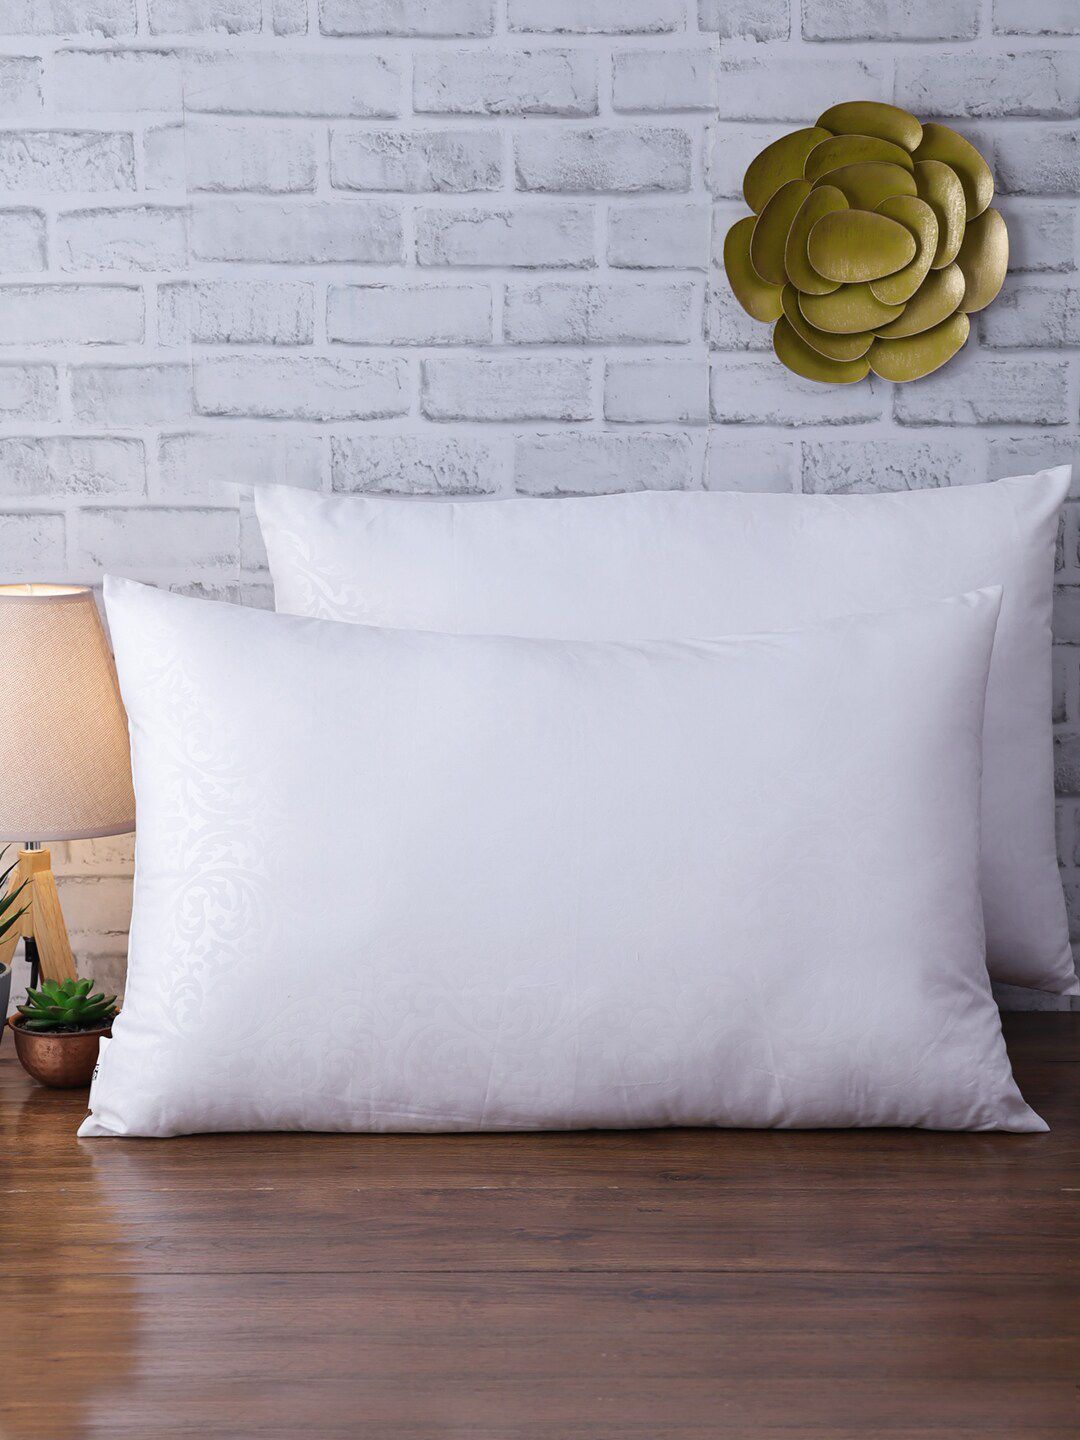 ROMEE Set of 2 White Jacquard Sleep Pillows Price in India